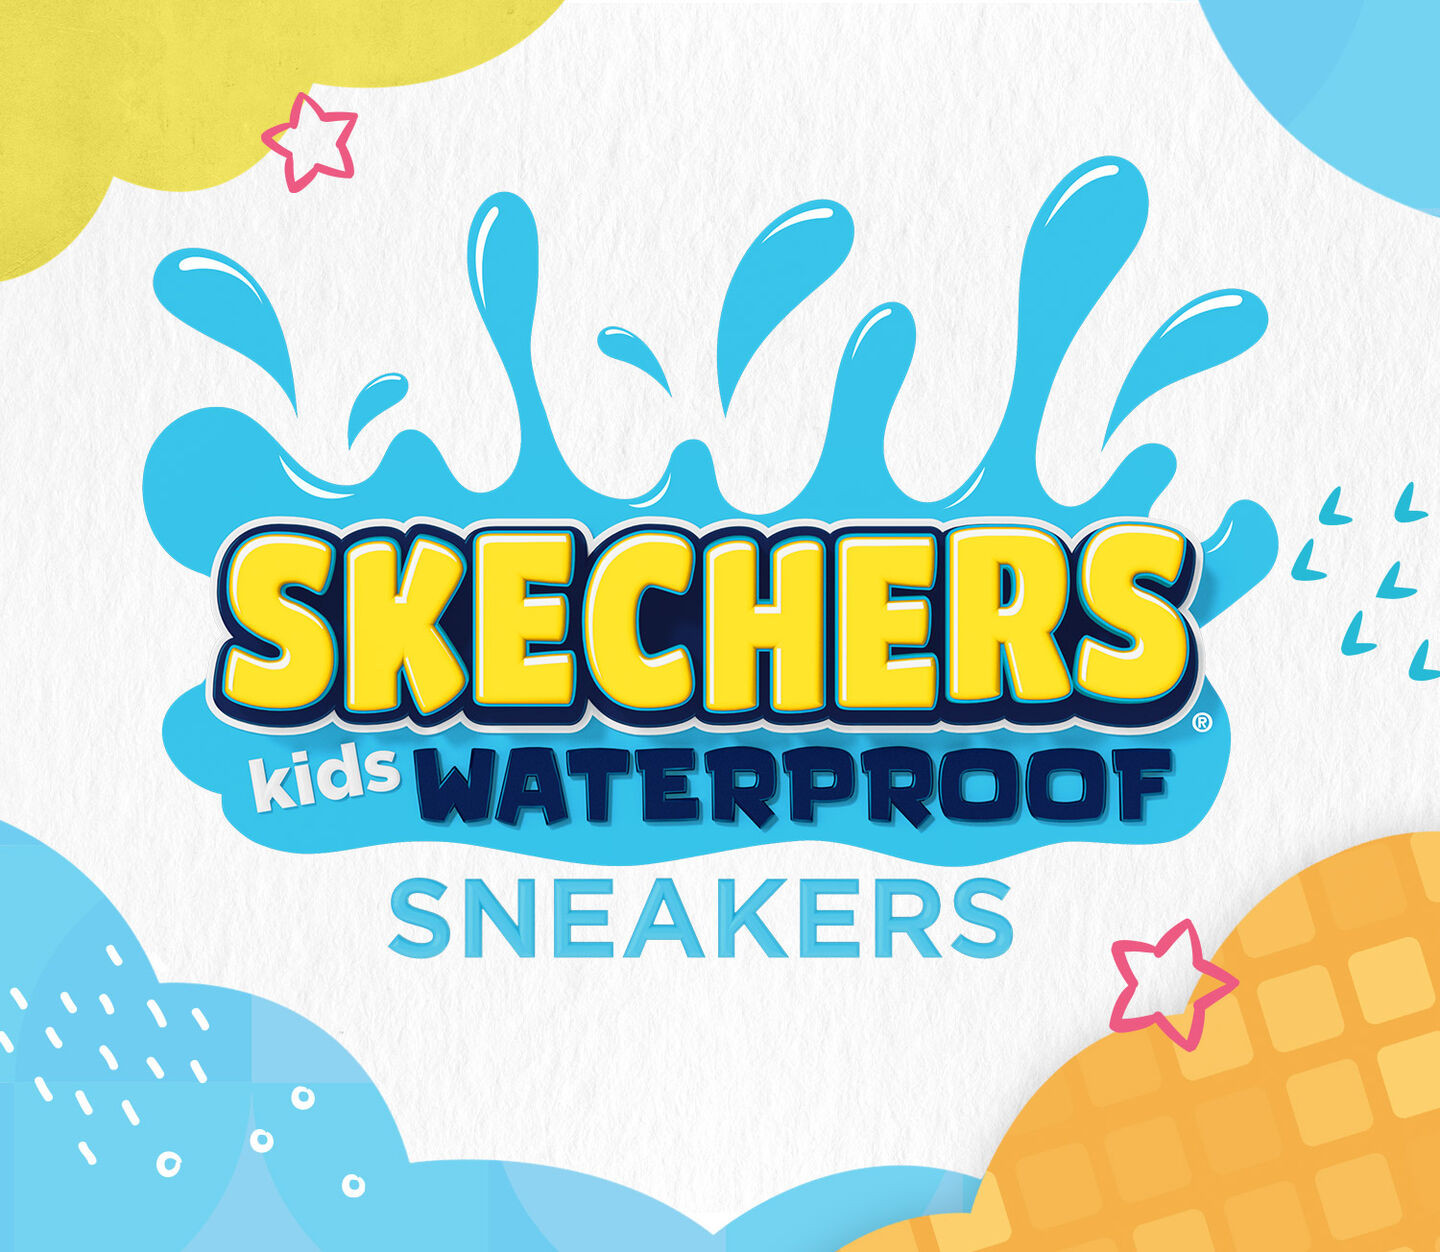 Kids Waterproof Sneakers